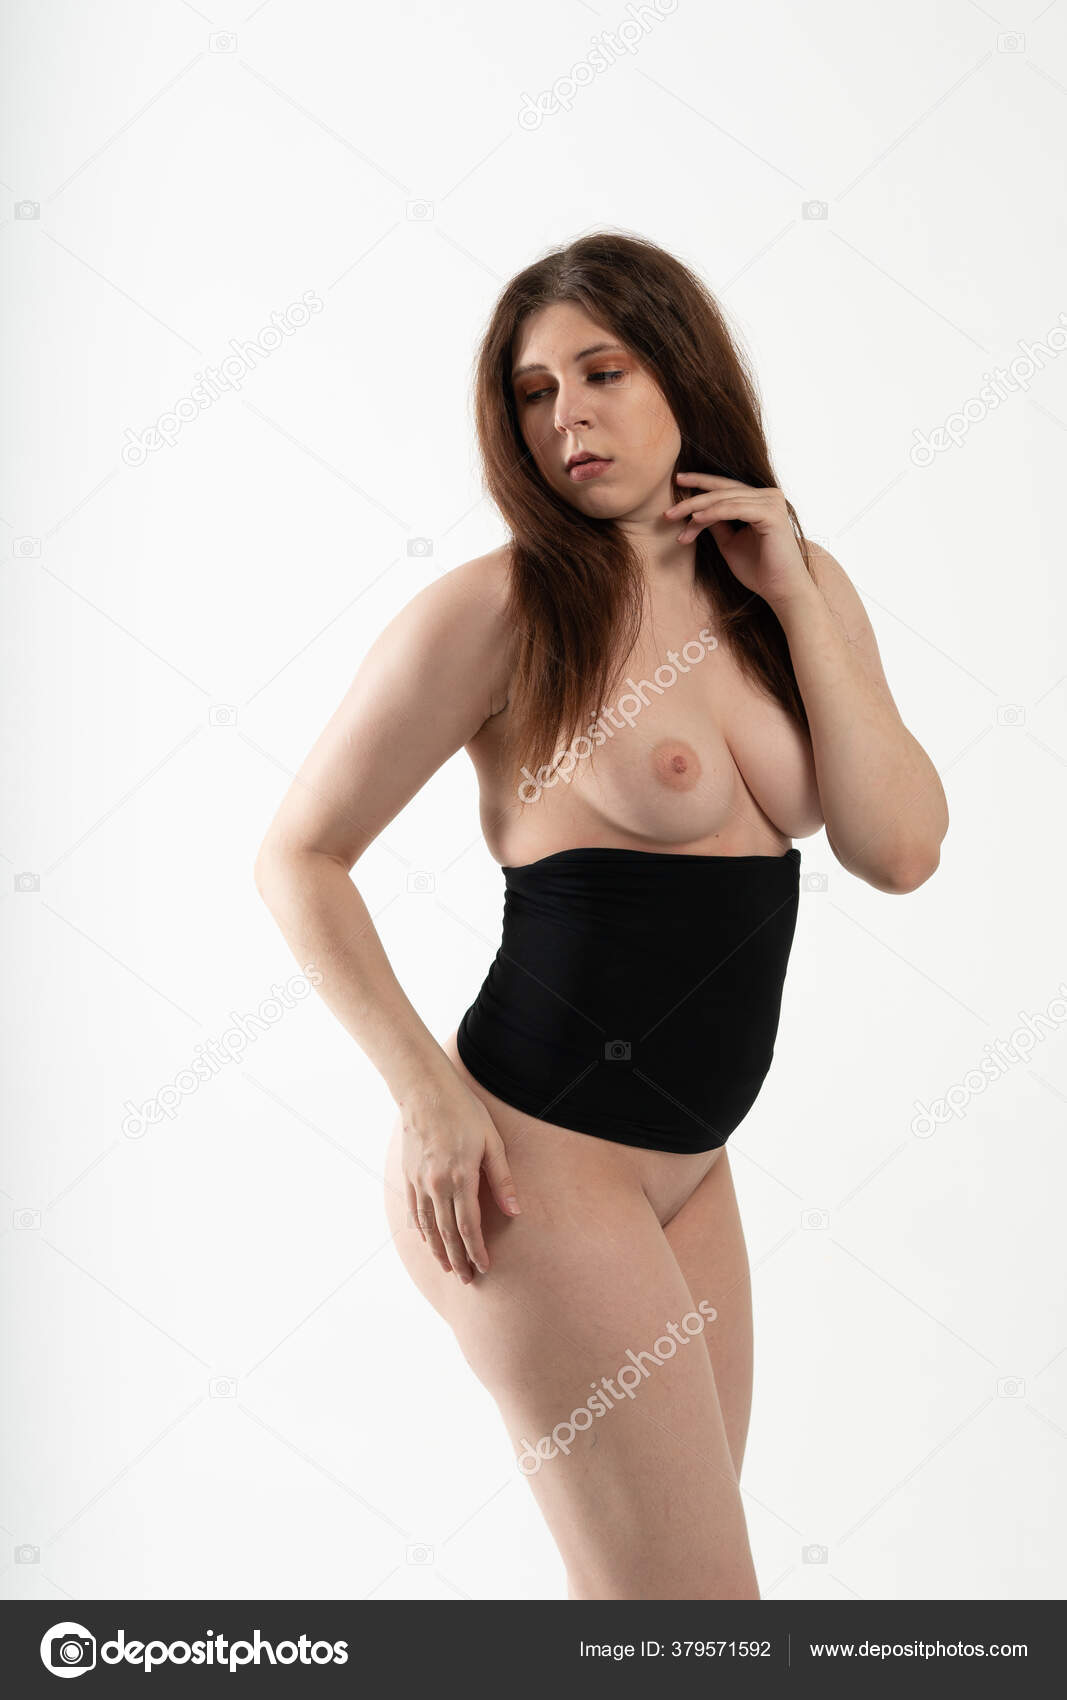 https://st4n.depositphotos.com/10086424/37957/i/1600/depositphotos_379571592-stock-photo-young-beautiful-girl-posing-nude.jpg